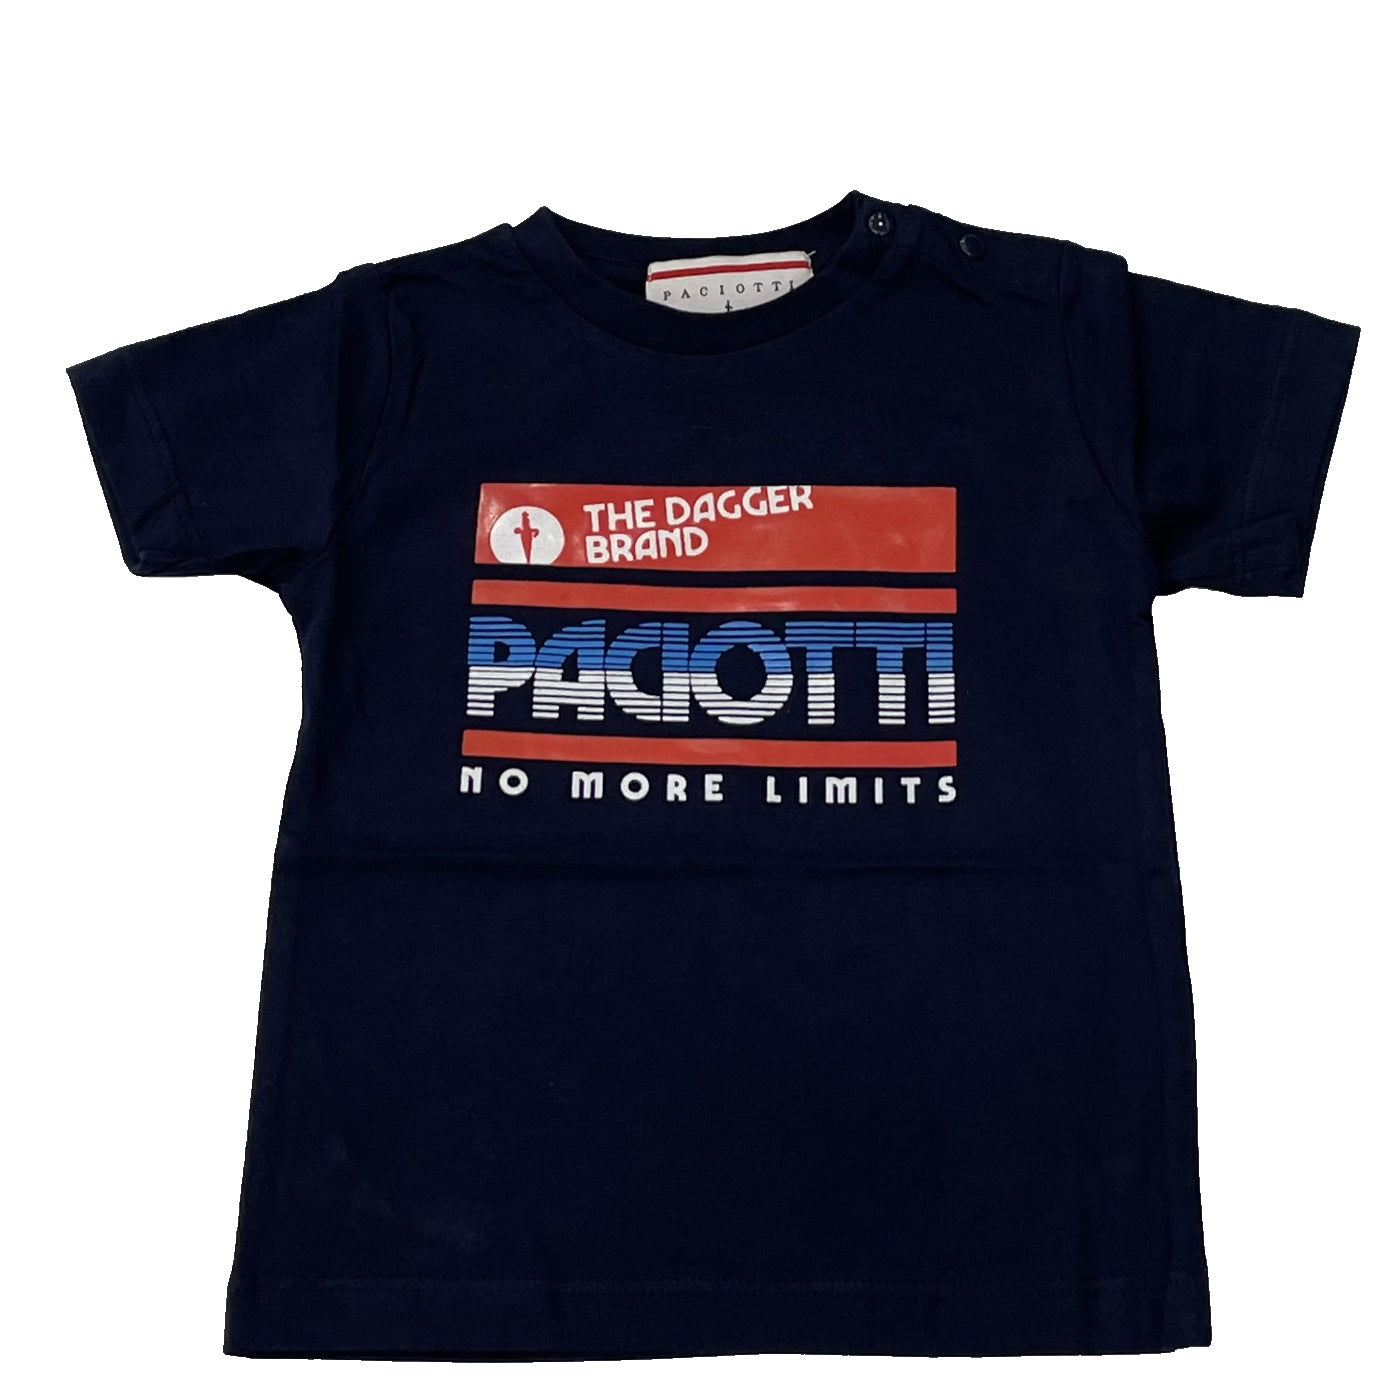 Cesare Paciotti t-shirt neonato